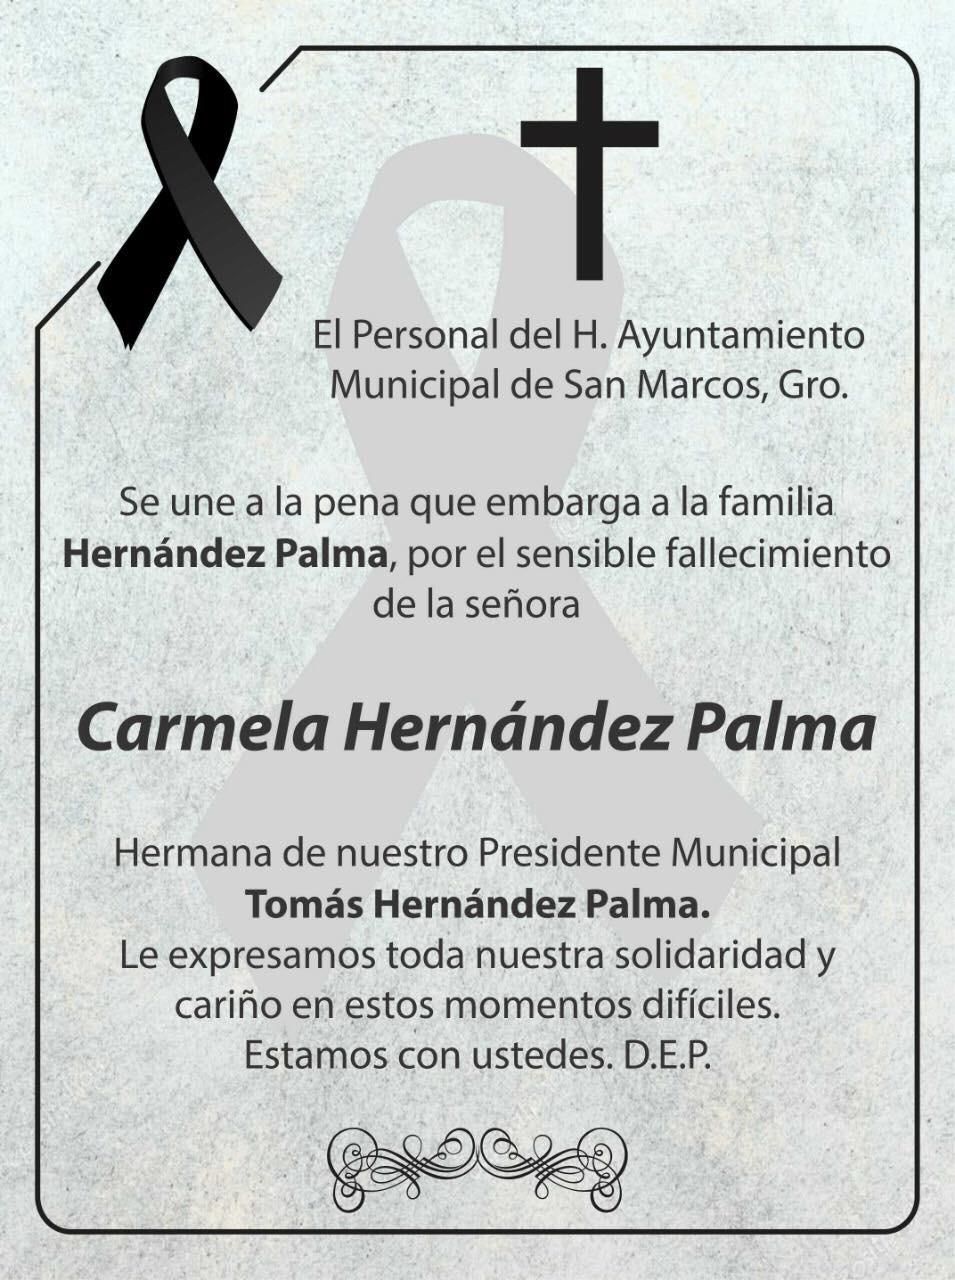 Trabajadores de San Marcos se unen a la pena por fallecimiento de Carmela Hernández Palma, hermana del alcalde 